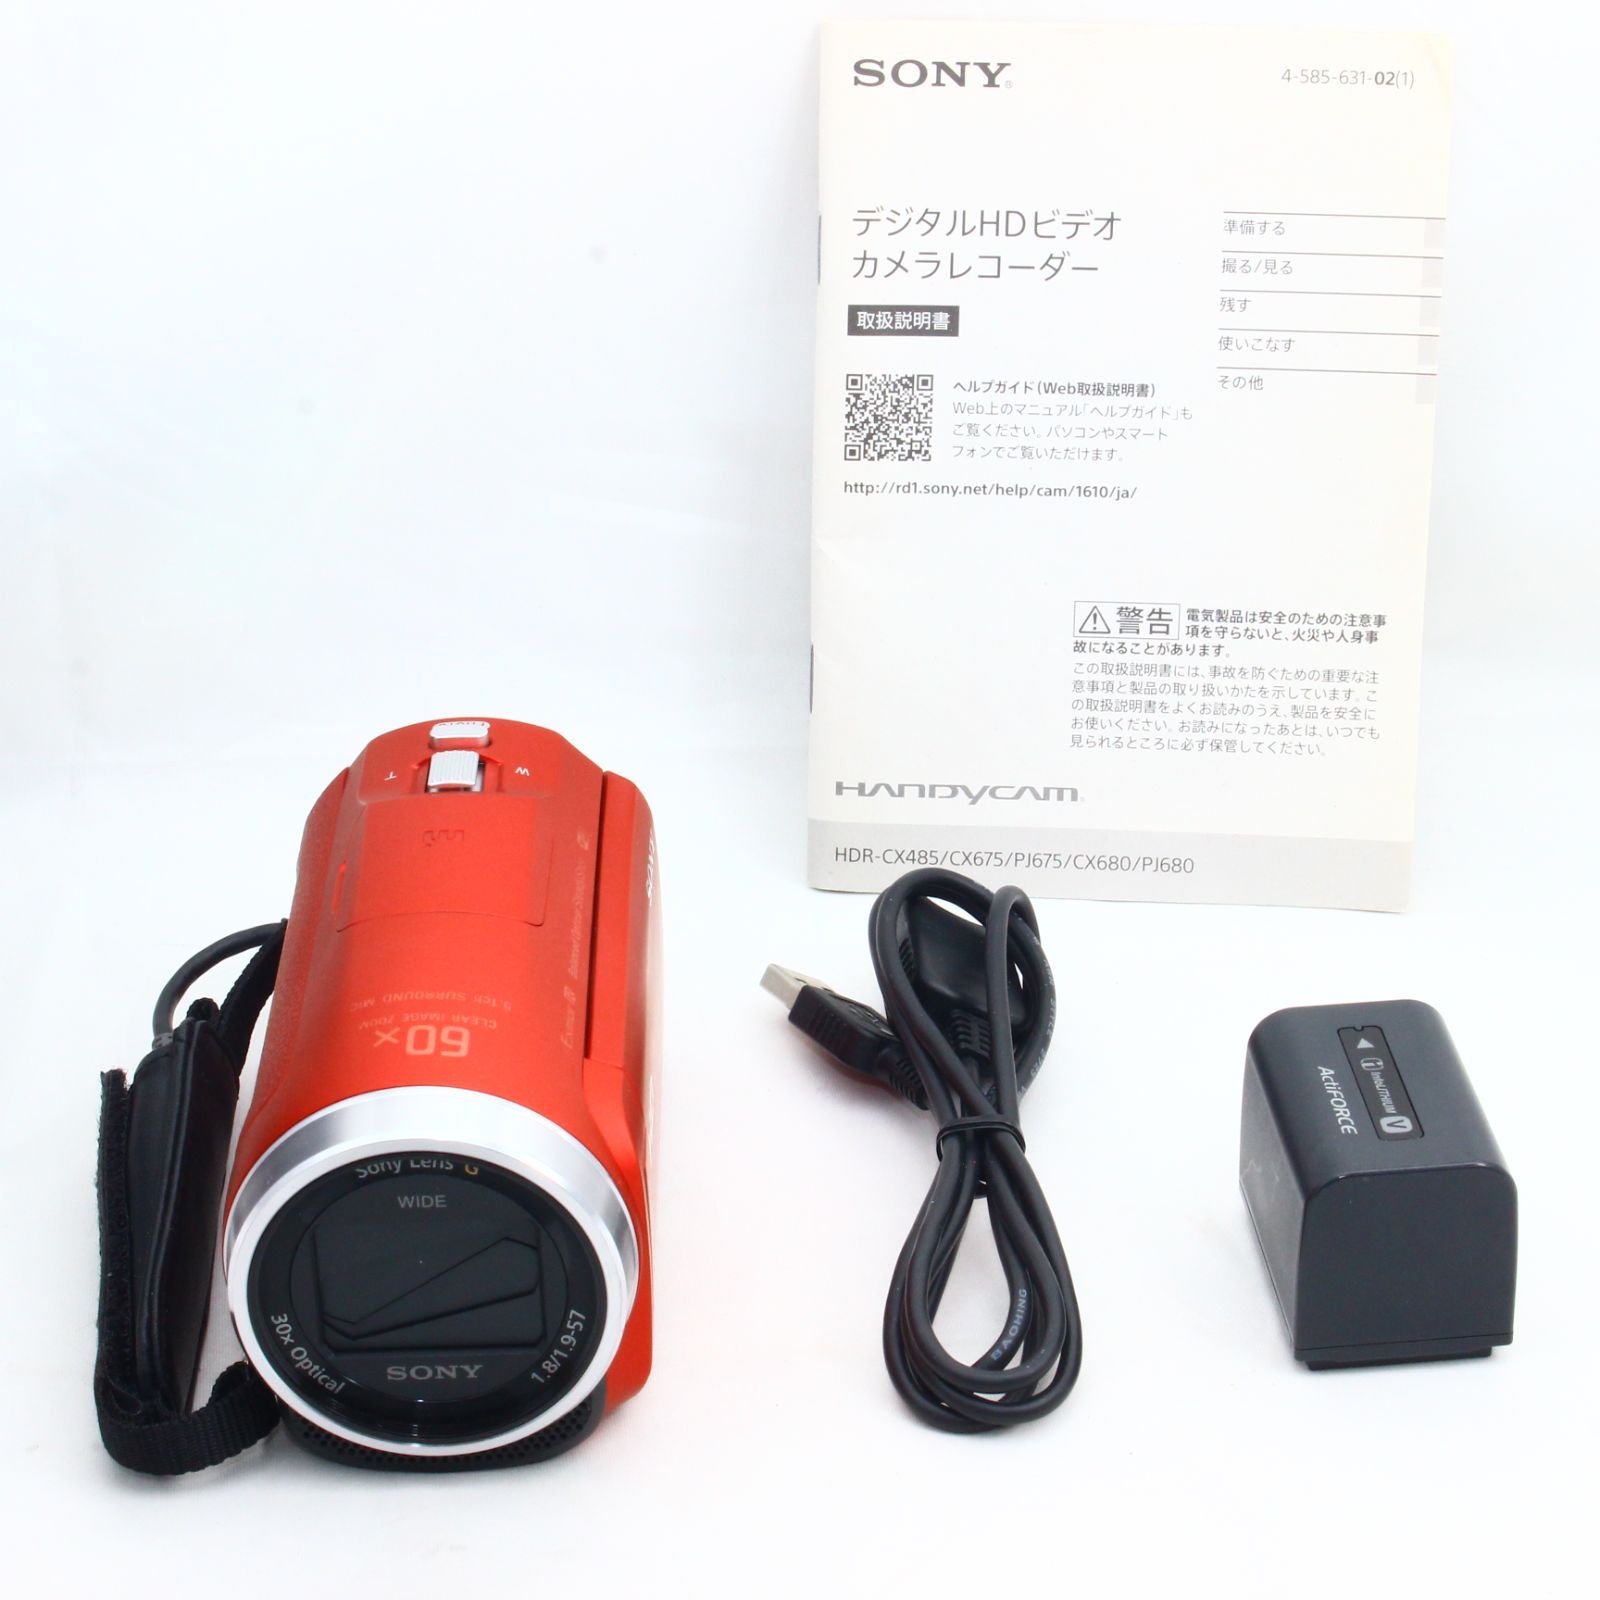 ソニー ビデオカメラ Handycam HDR-CX680 光学30倍 内蔵メモリー64GB